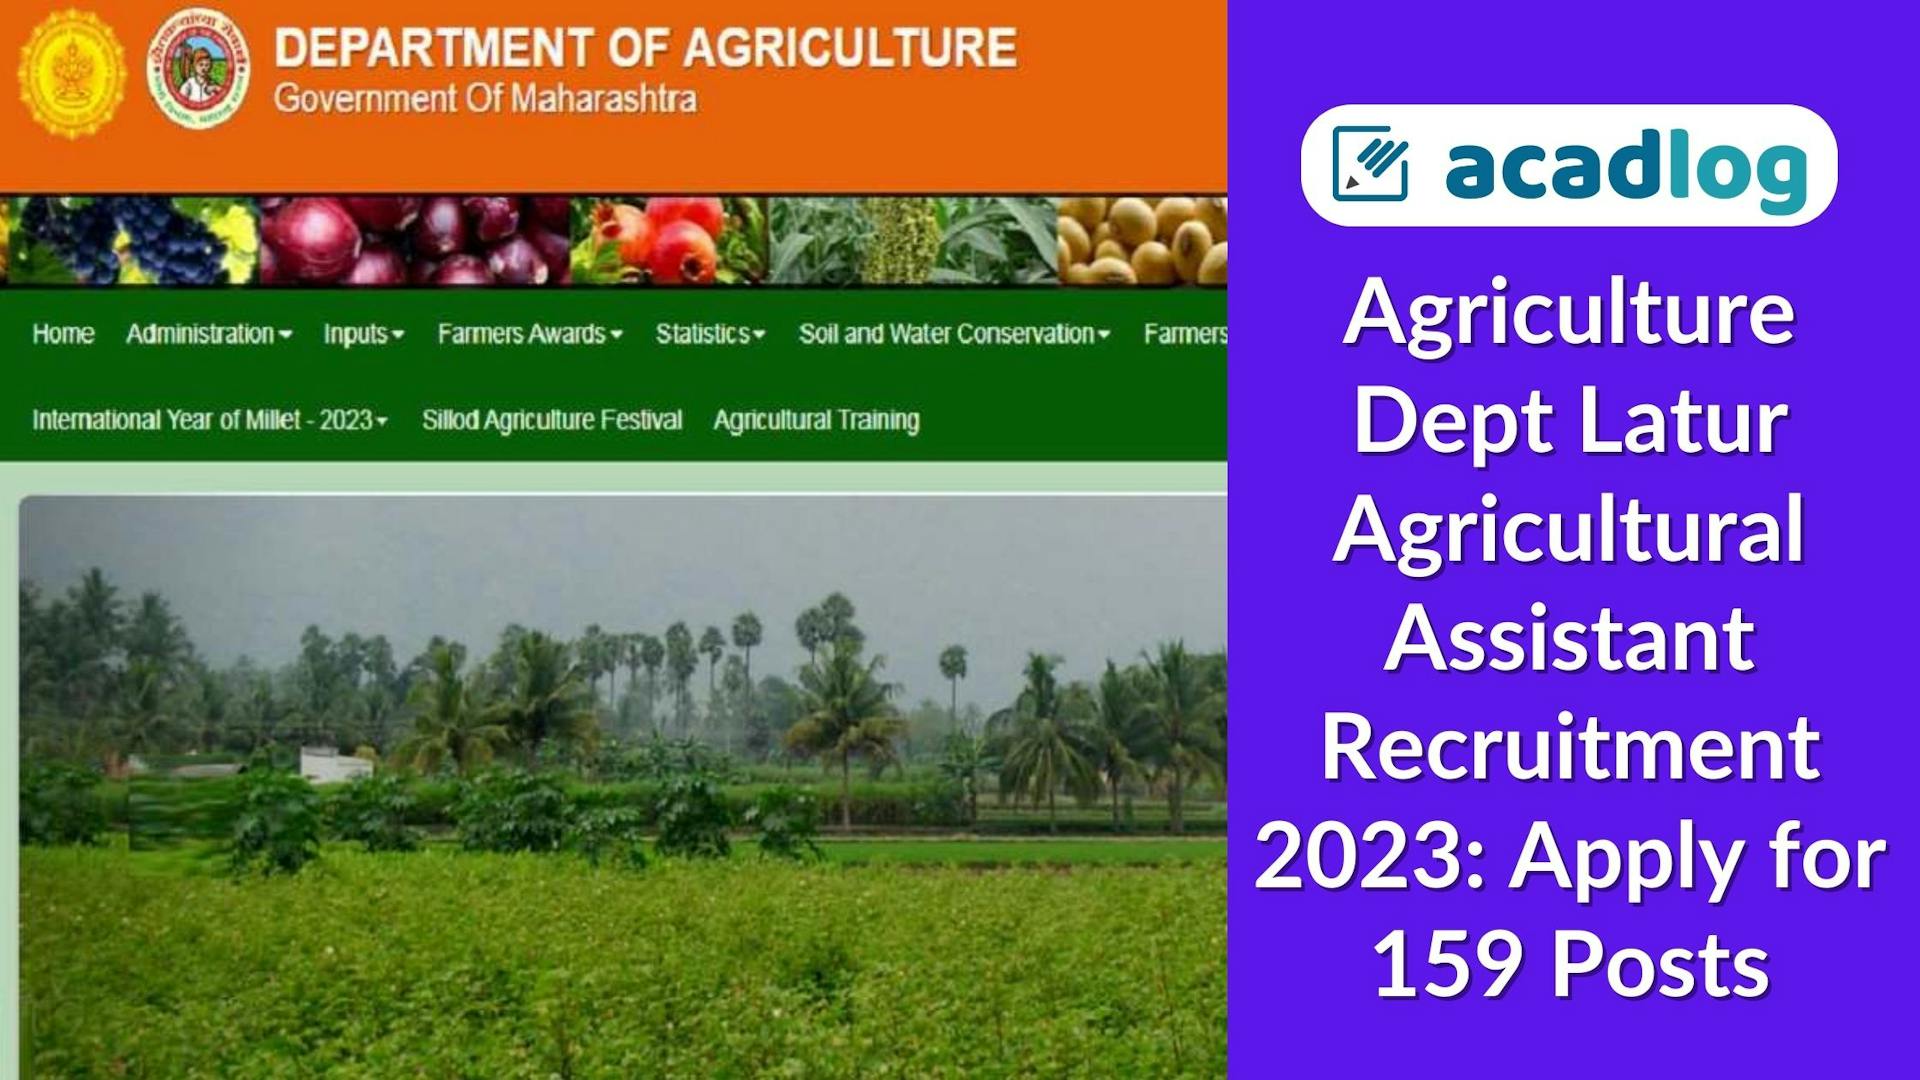 Latur Govt Jobs: Agricultural Assistant Recruitment 2023 for 159 Vacancies